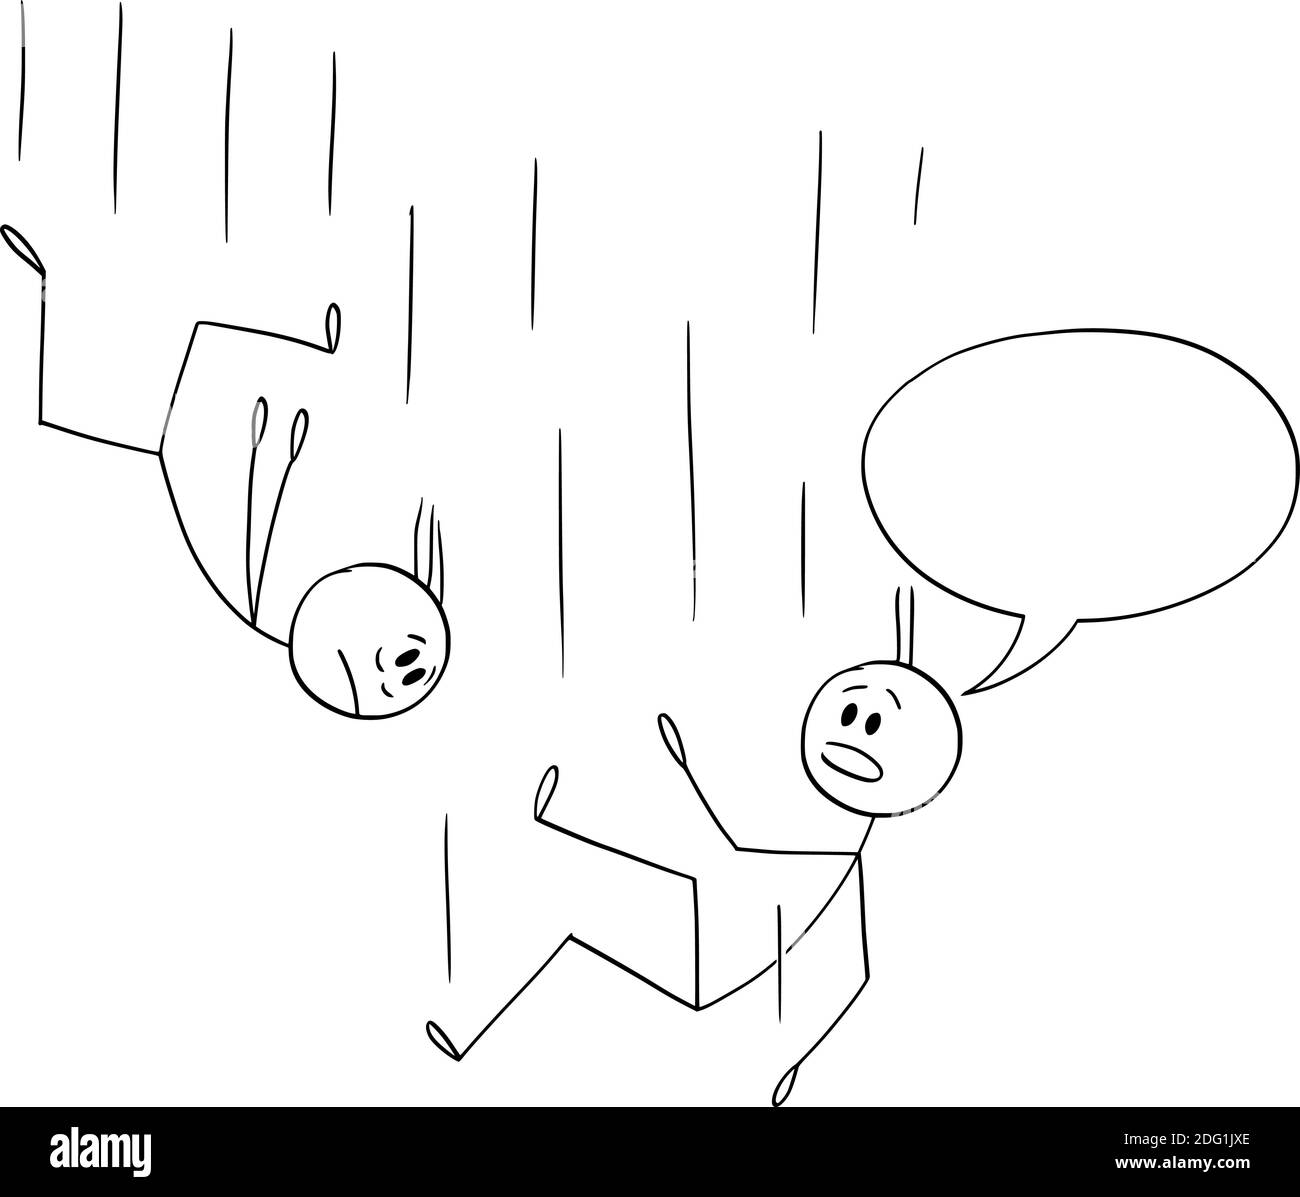 Vektor Cartoon Stick Figur Illustration der Konversation von zwei fallenden Männern oder Geschäftsleuten, ist man etwas in Sprechblase zu sagen. Comic-Streifen. Stock Vektor